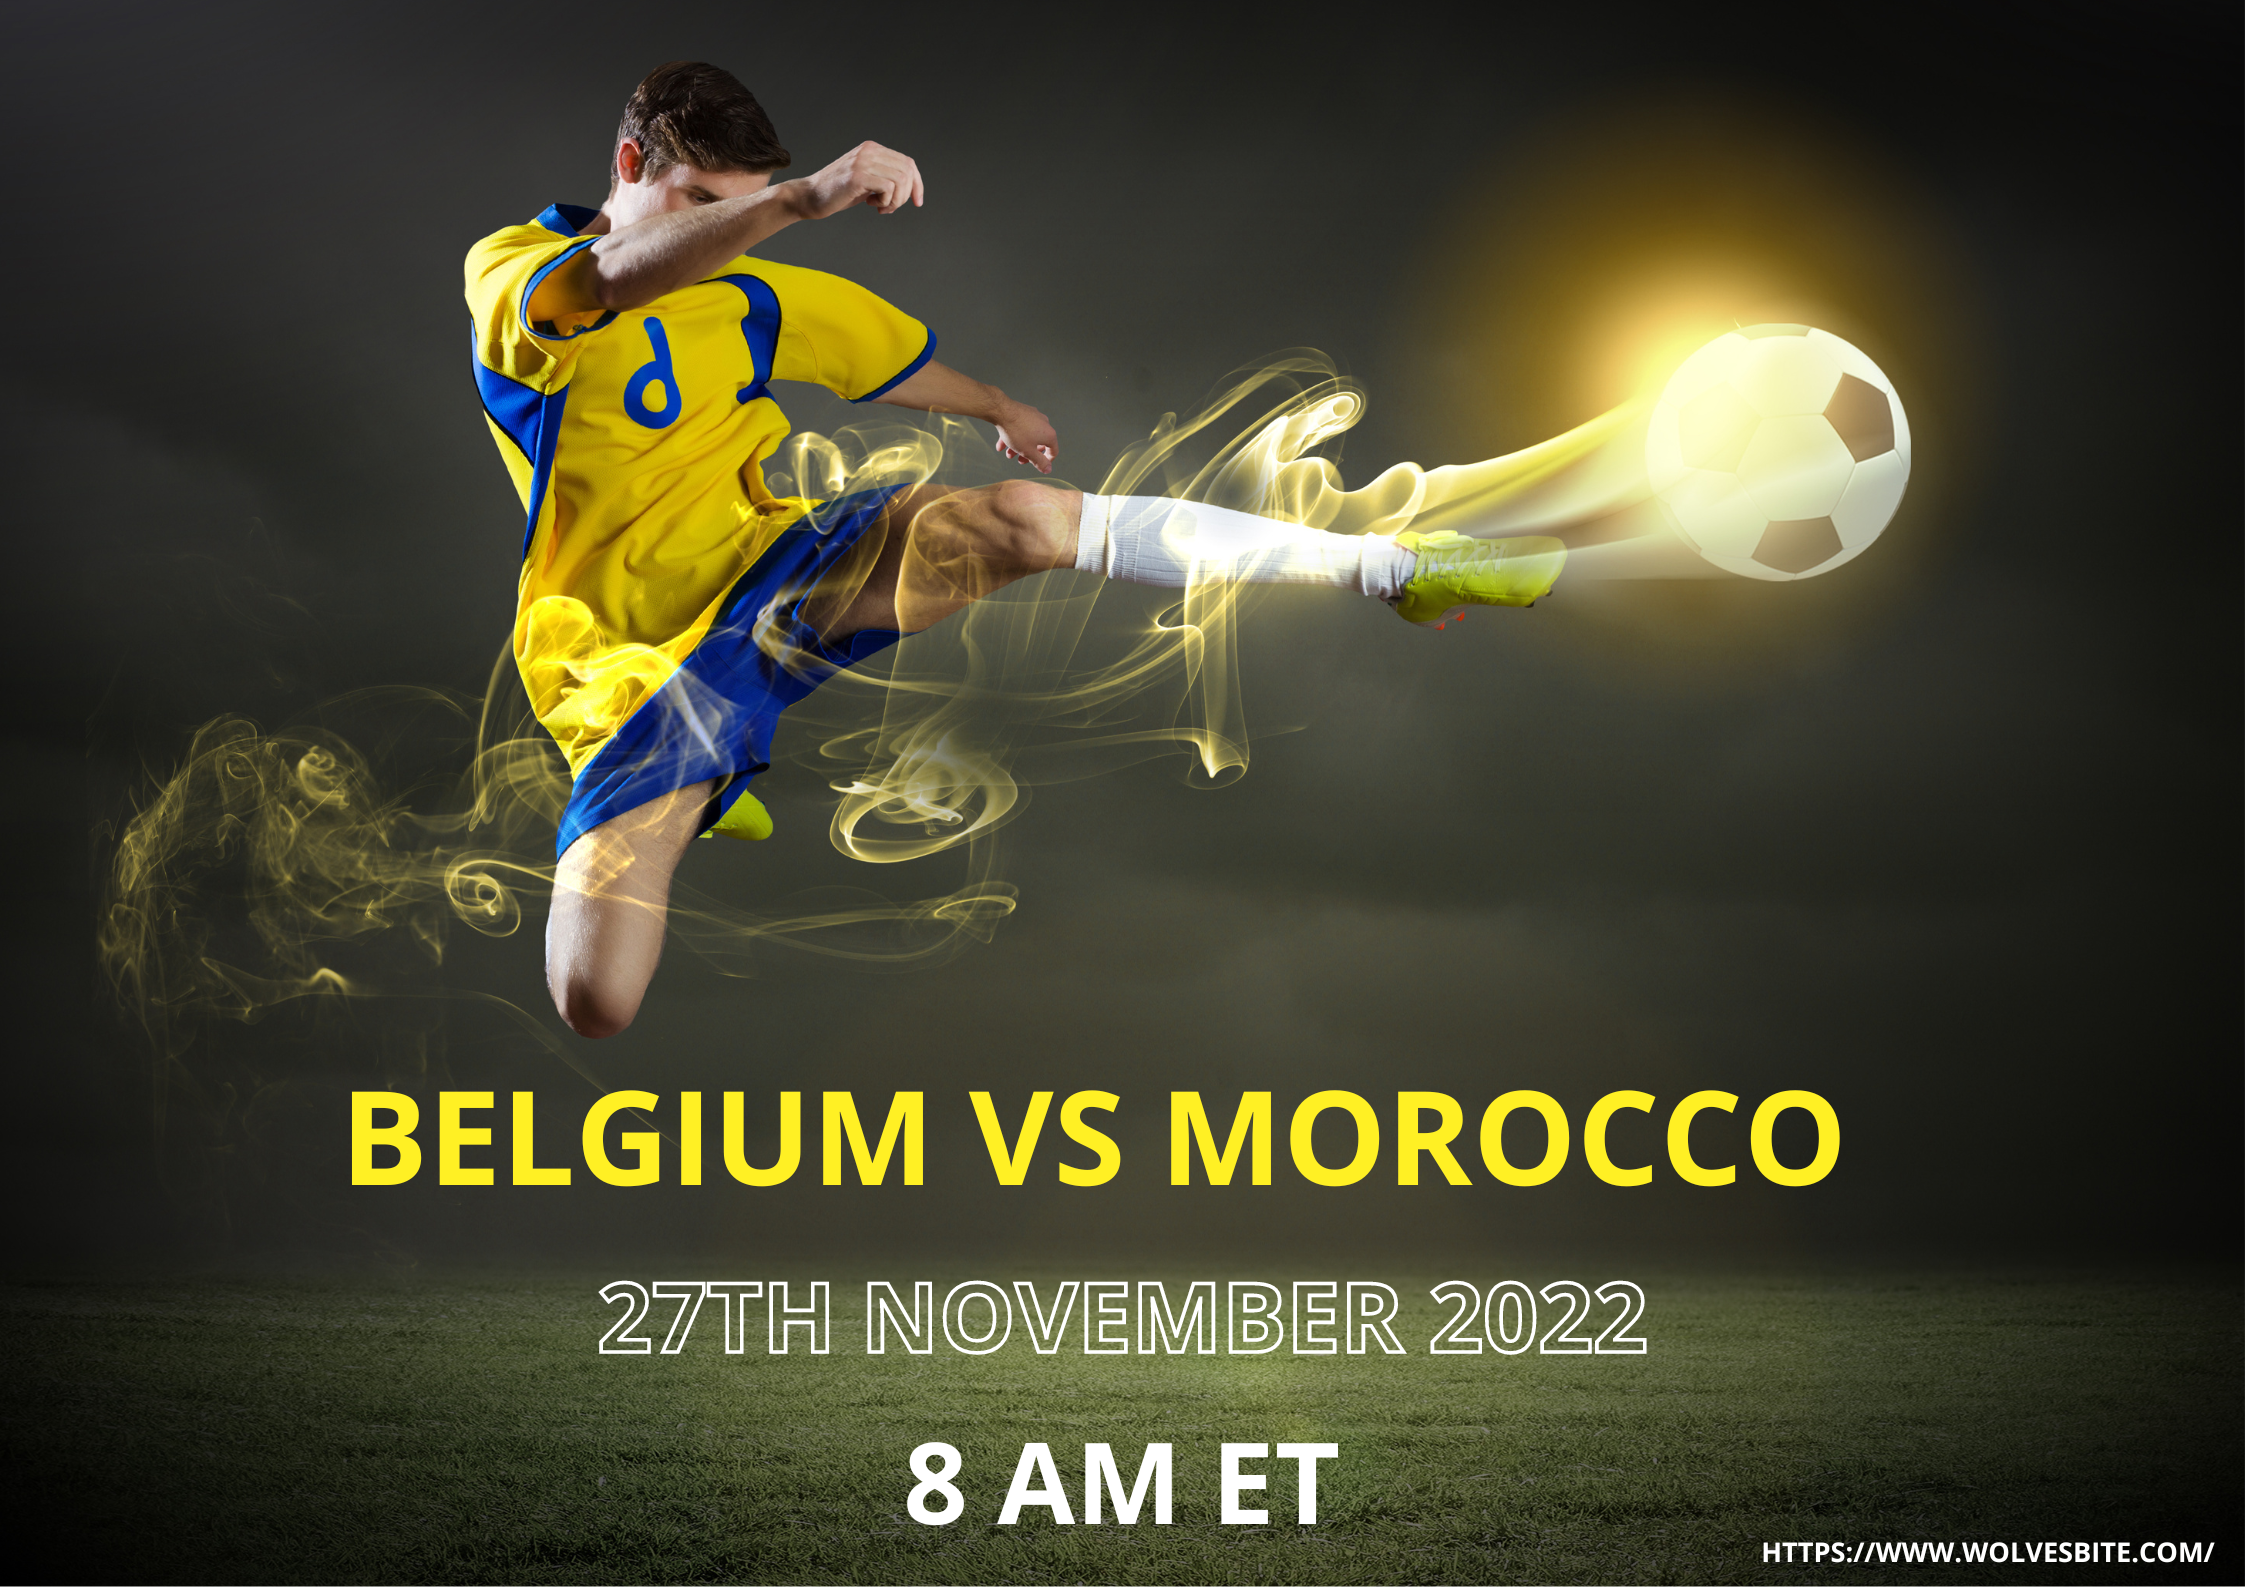 Belgium vs Morocco live